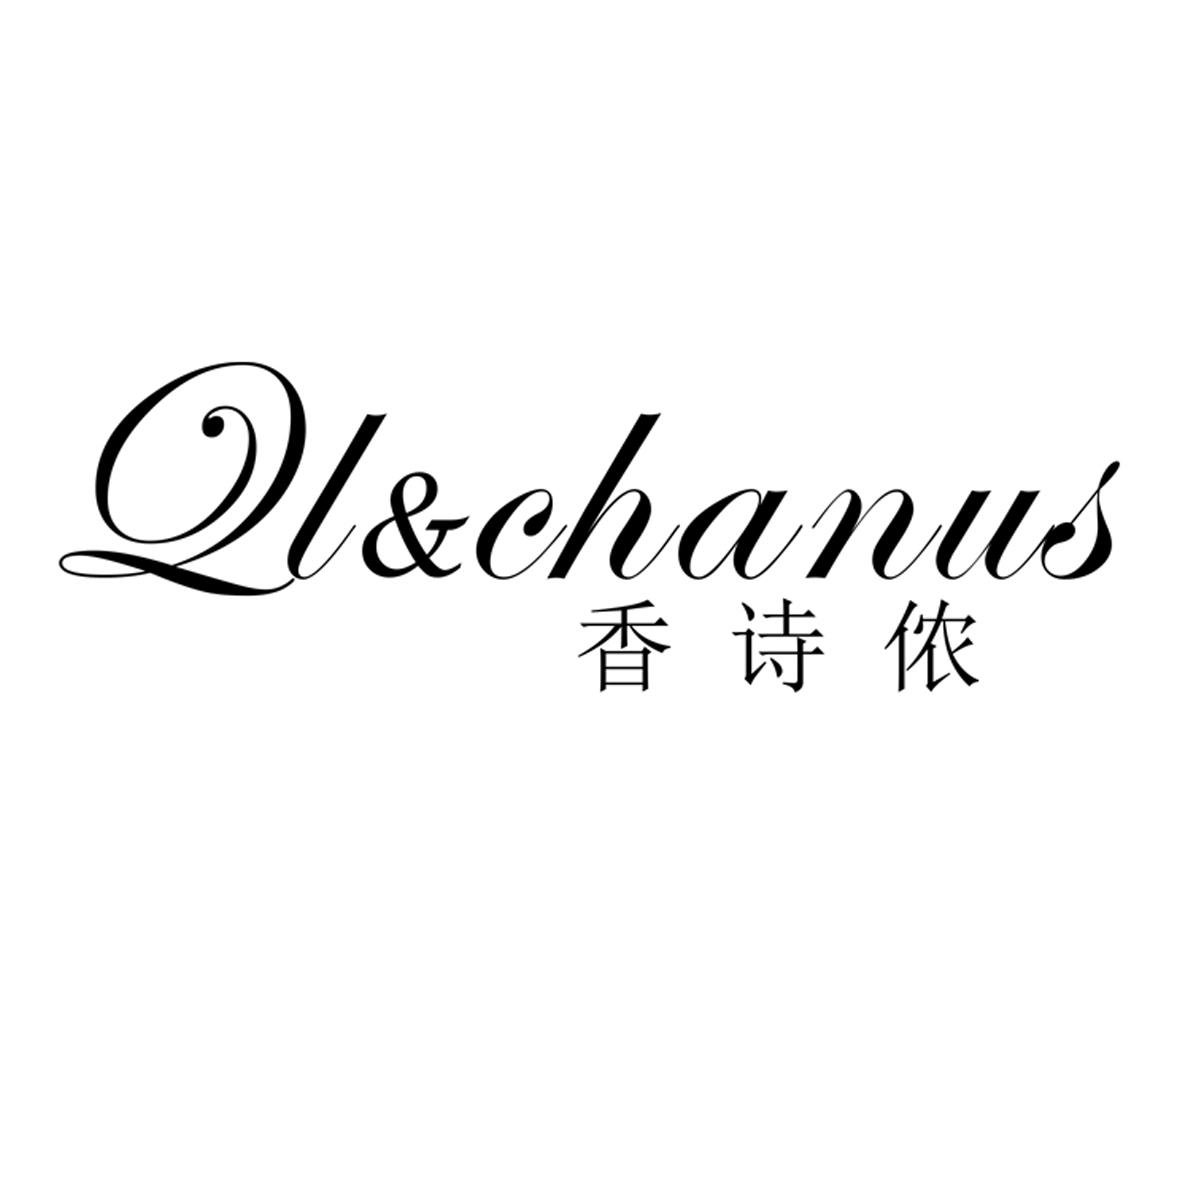 QL&chanus 香诗侬家用洗衣篮商标转让费用买卖交易流程